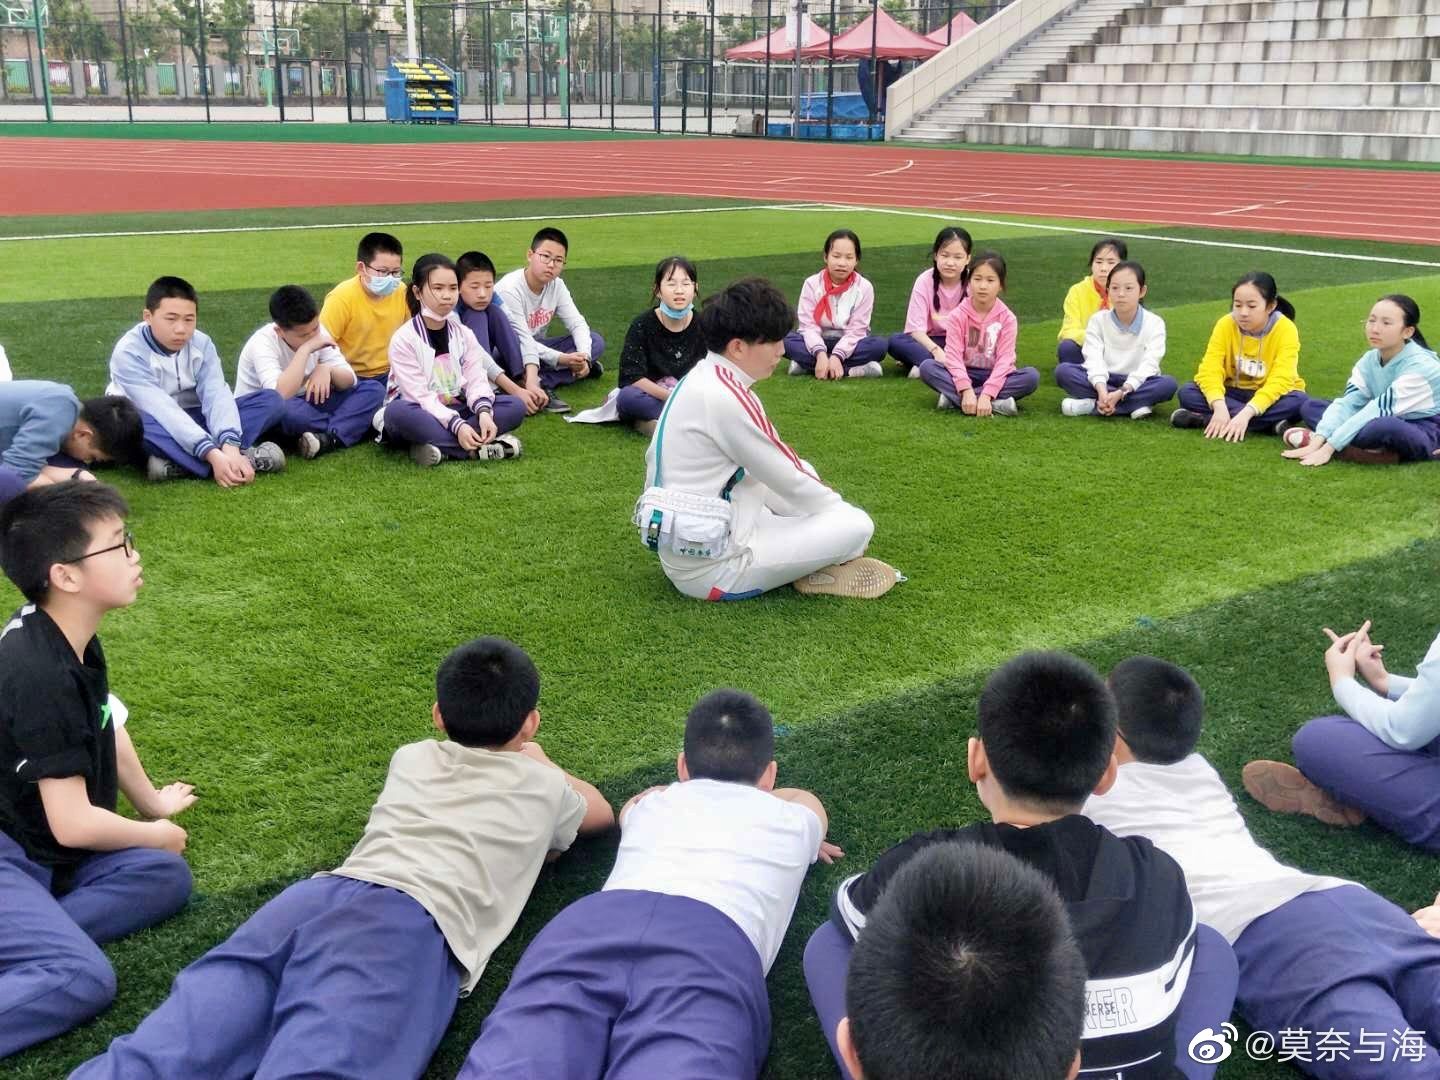 楼威辰与孩子们分享在武汉的故事。  楼威辰微博图